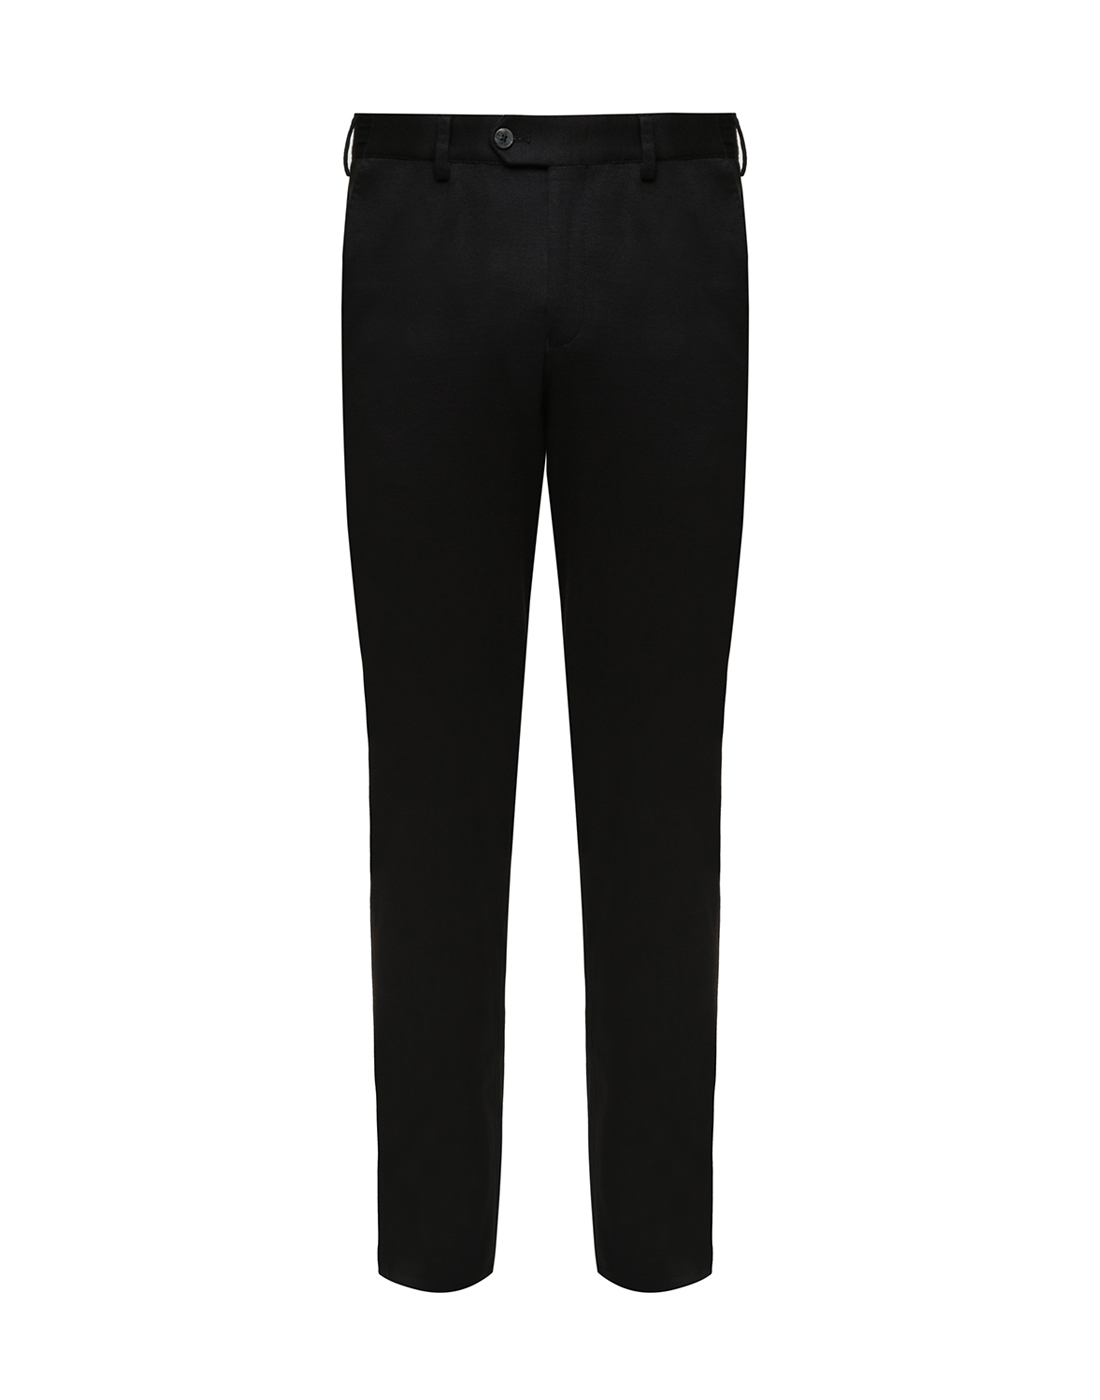 Мужские черные брюки Hiltl  S22160 1 68500-1